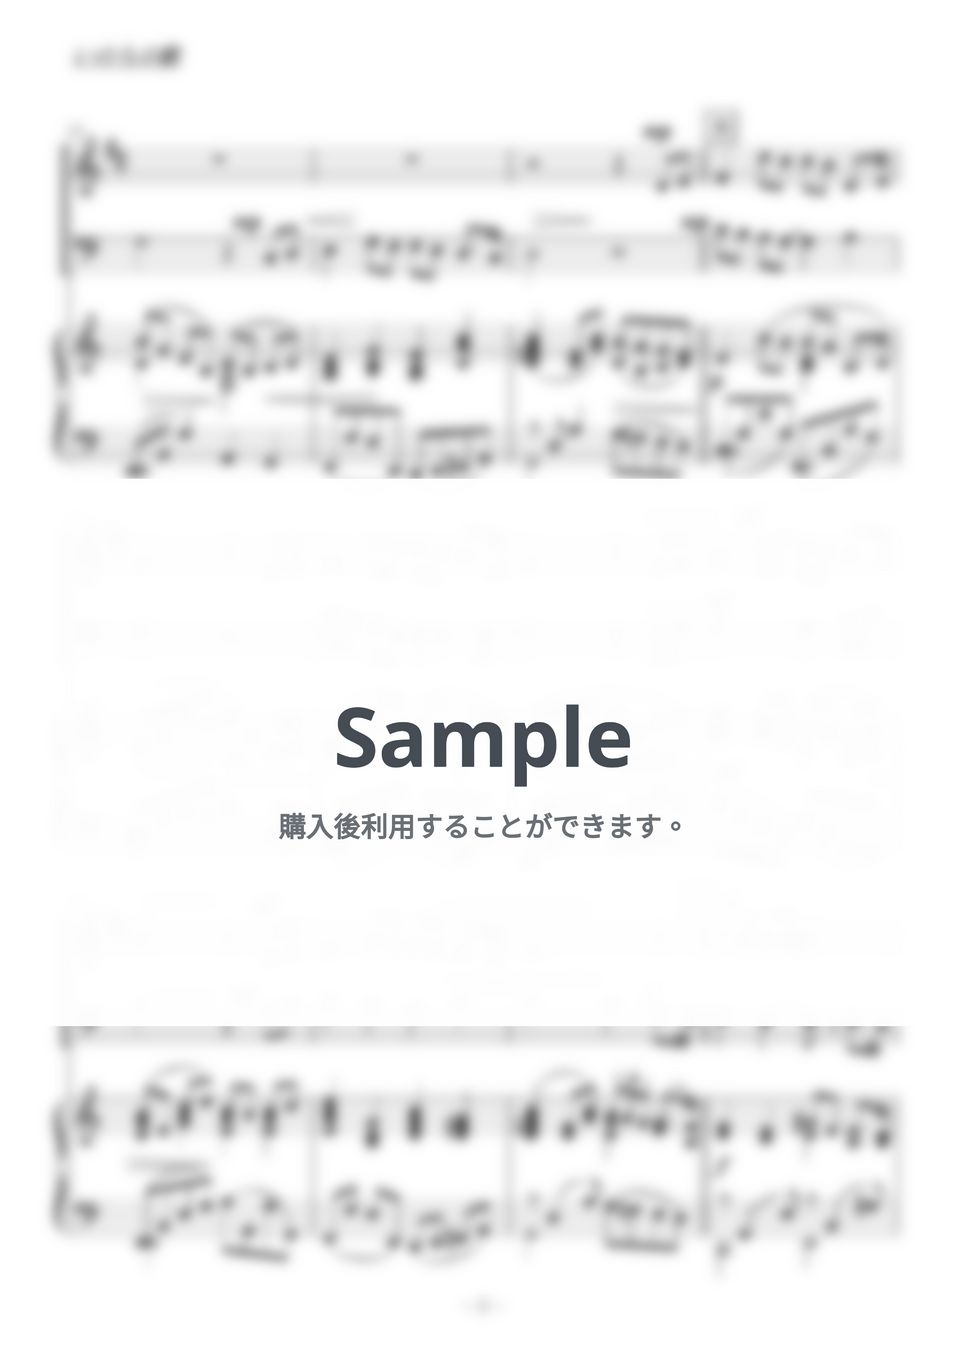 竹内まりや - いのちの歌 (トランペット・トロンボーン二重奏) by kiminabe